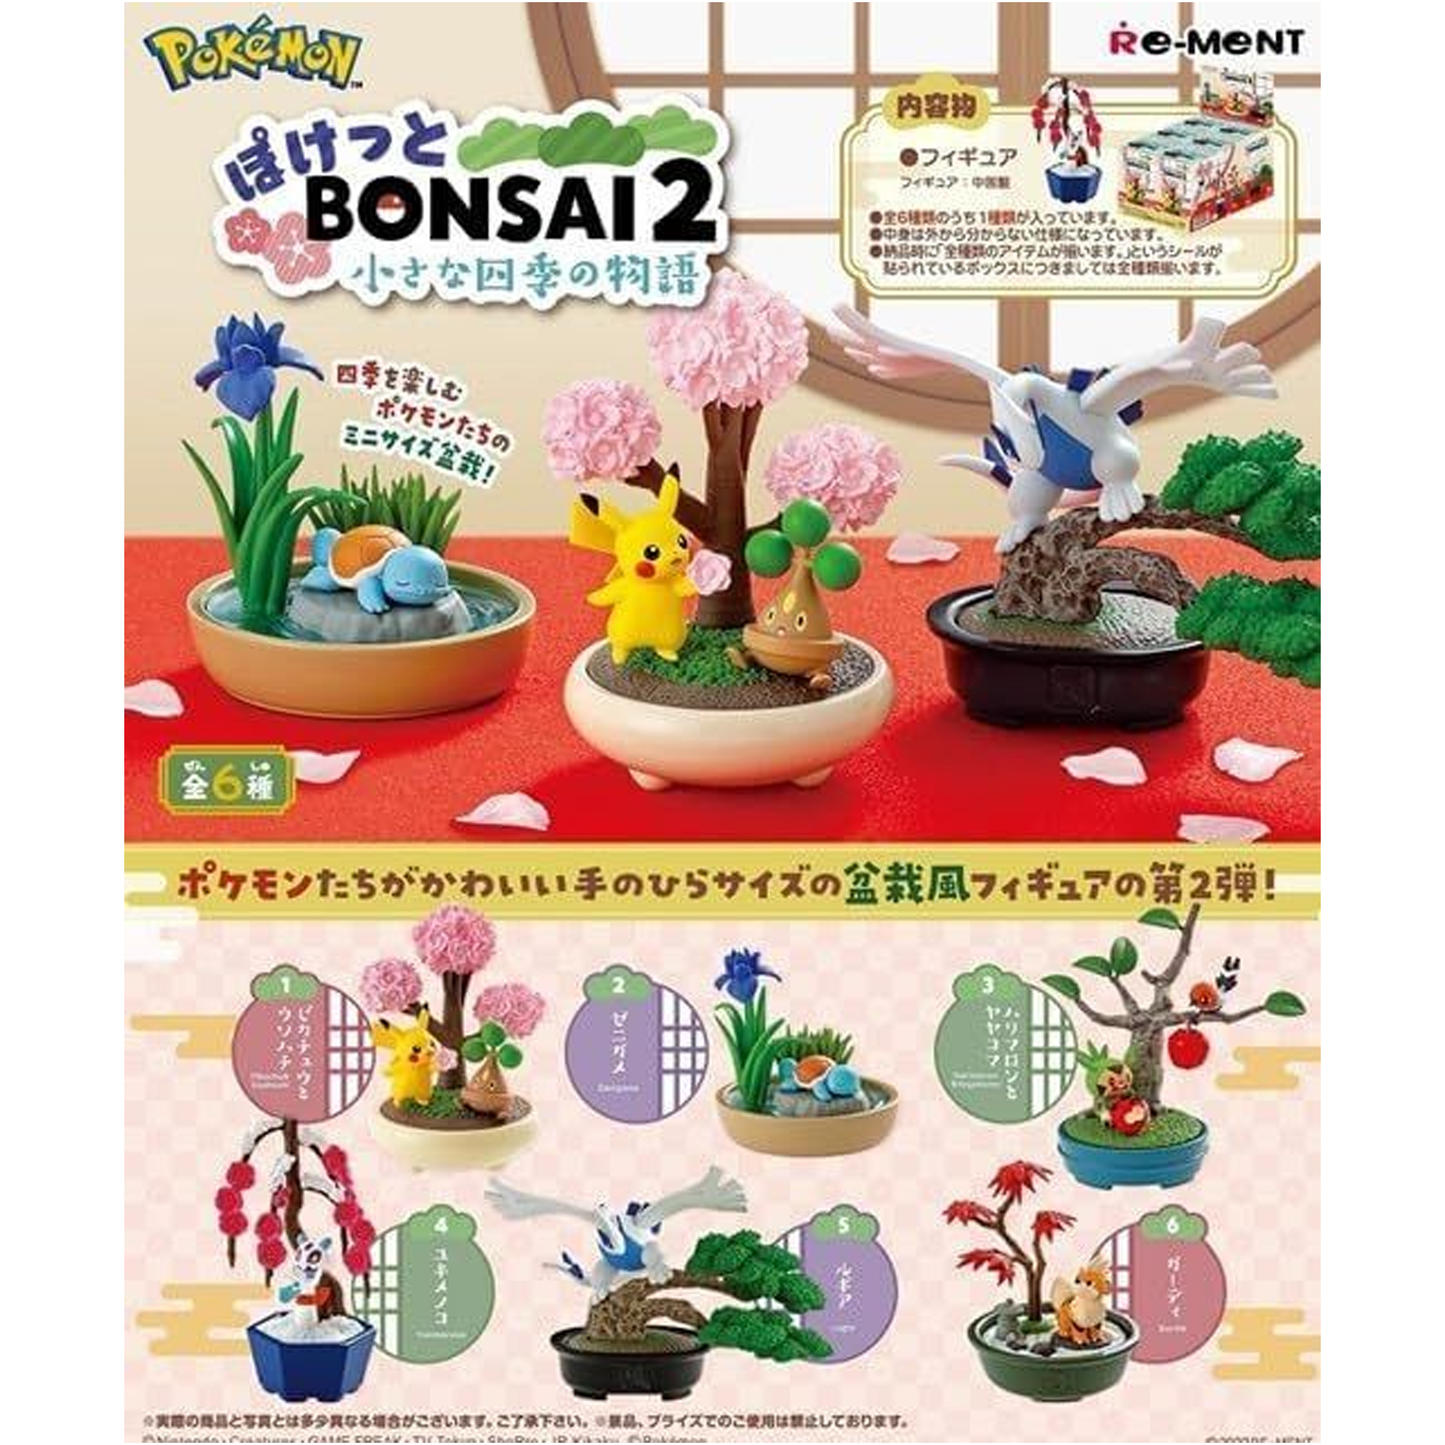 Re-Ment Pokémon Bonsai 2 - Mini Figure Blind Box (Back of Box) | Happy Piranha